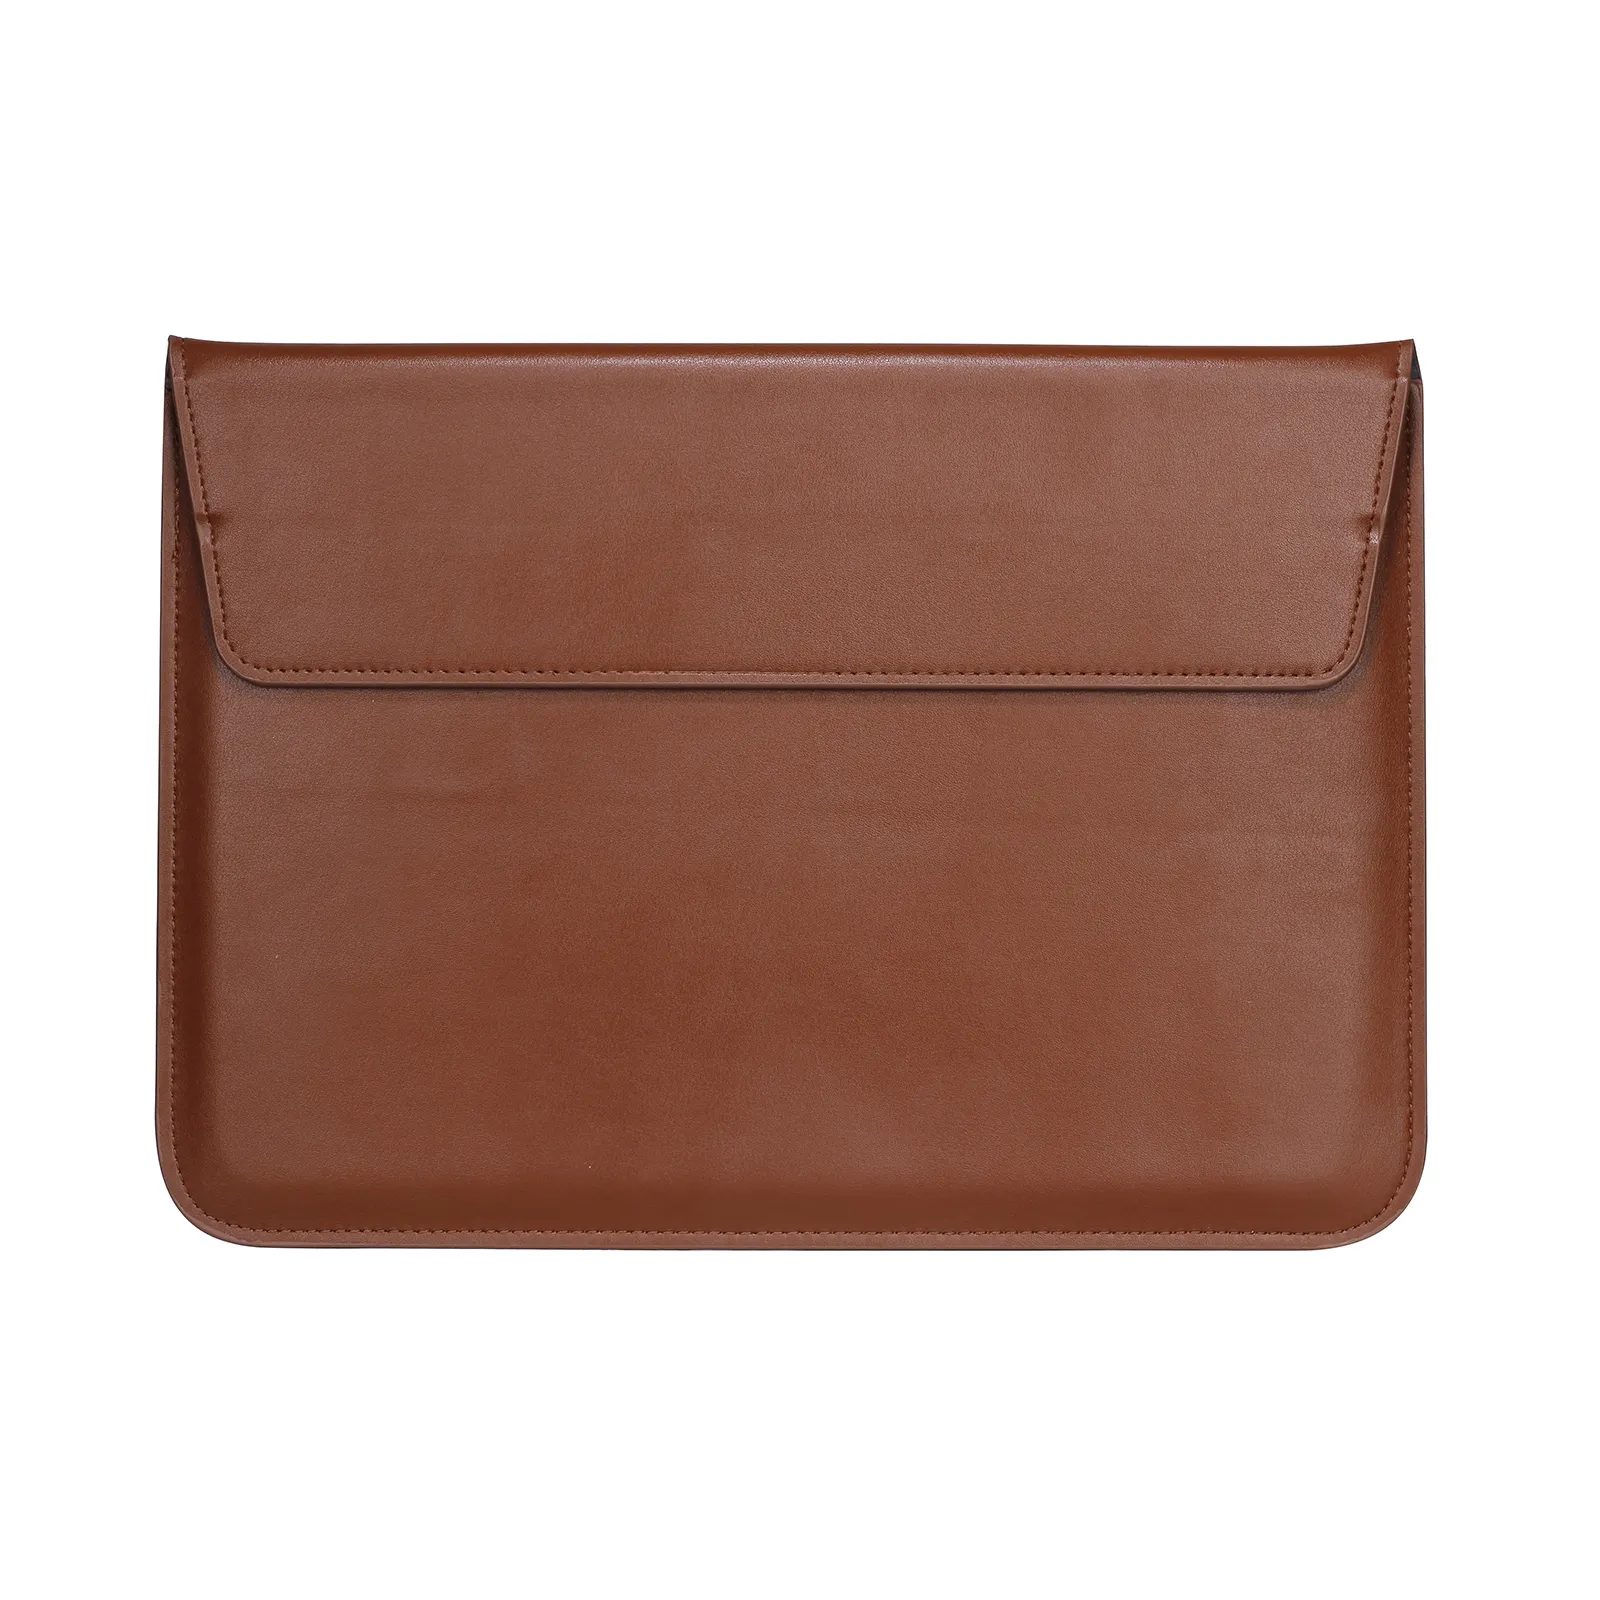 चमड़े लिफाफा बैग डिजाइन लैपटॉप मामले के लिए मैकबुक प्रो 13 15 लैपटॉप कवर